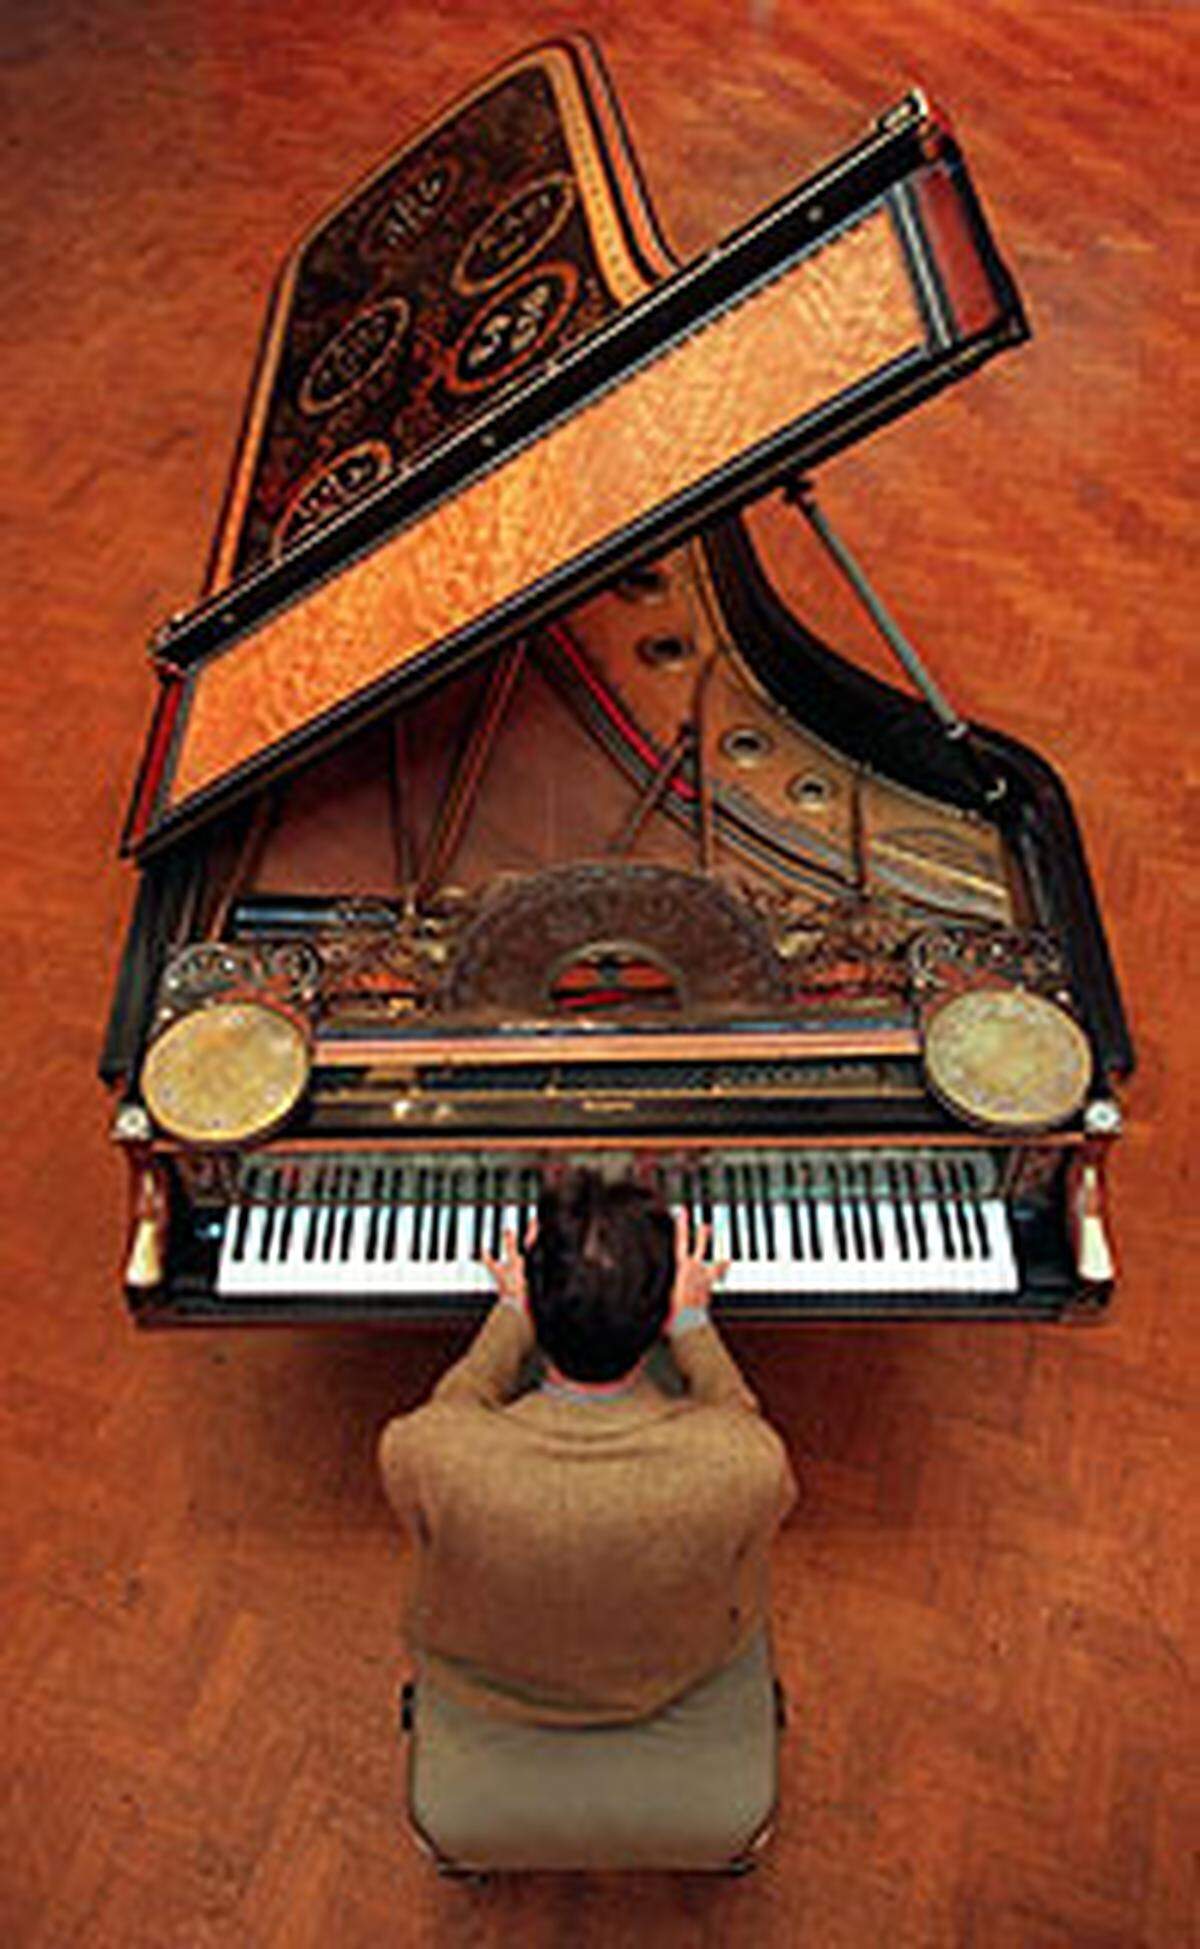 Der holländische Pianist Maarten van Veen spielte auf einem Steinway-Piano, das bei Christie's in London für rund 1,3 Millionen US-Dollar versteigert wurde.